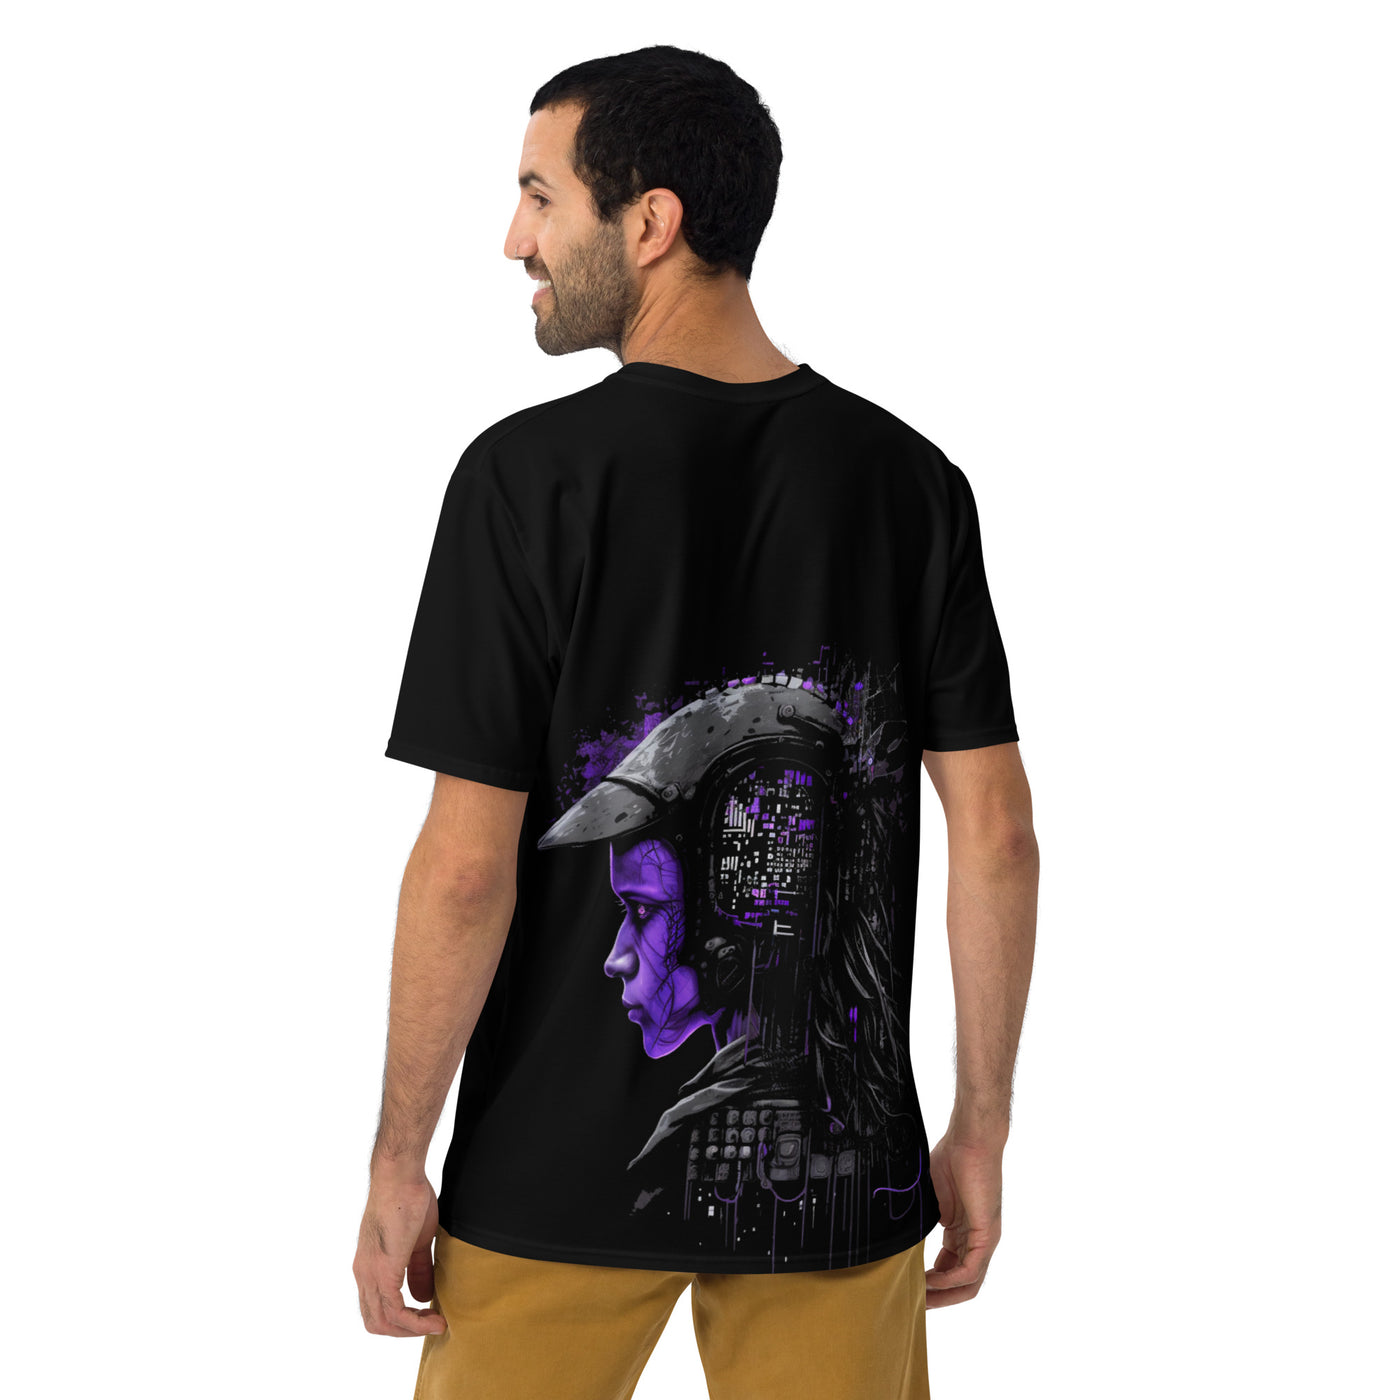 Cyberware assassin v41 - Men's t-shirt (back print)